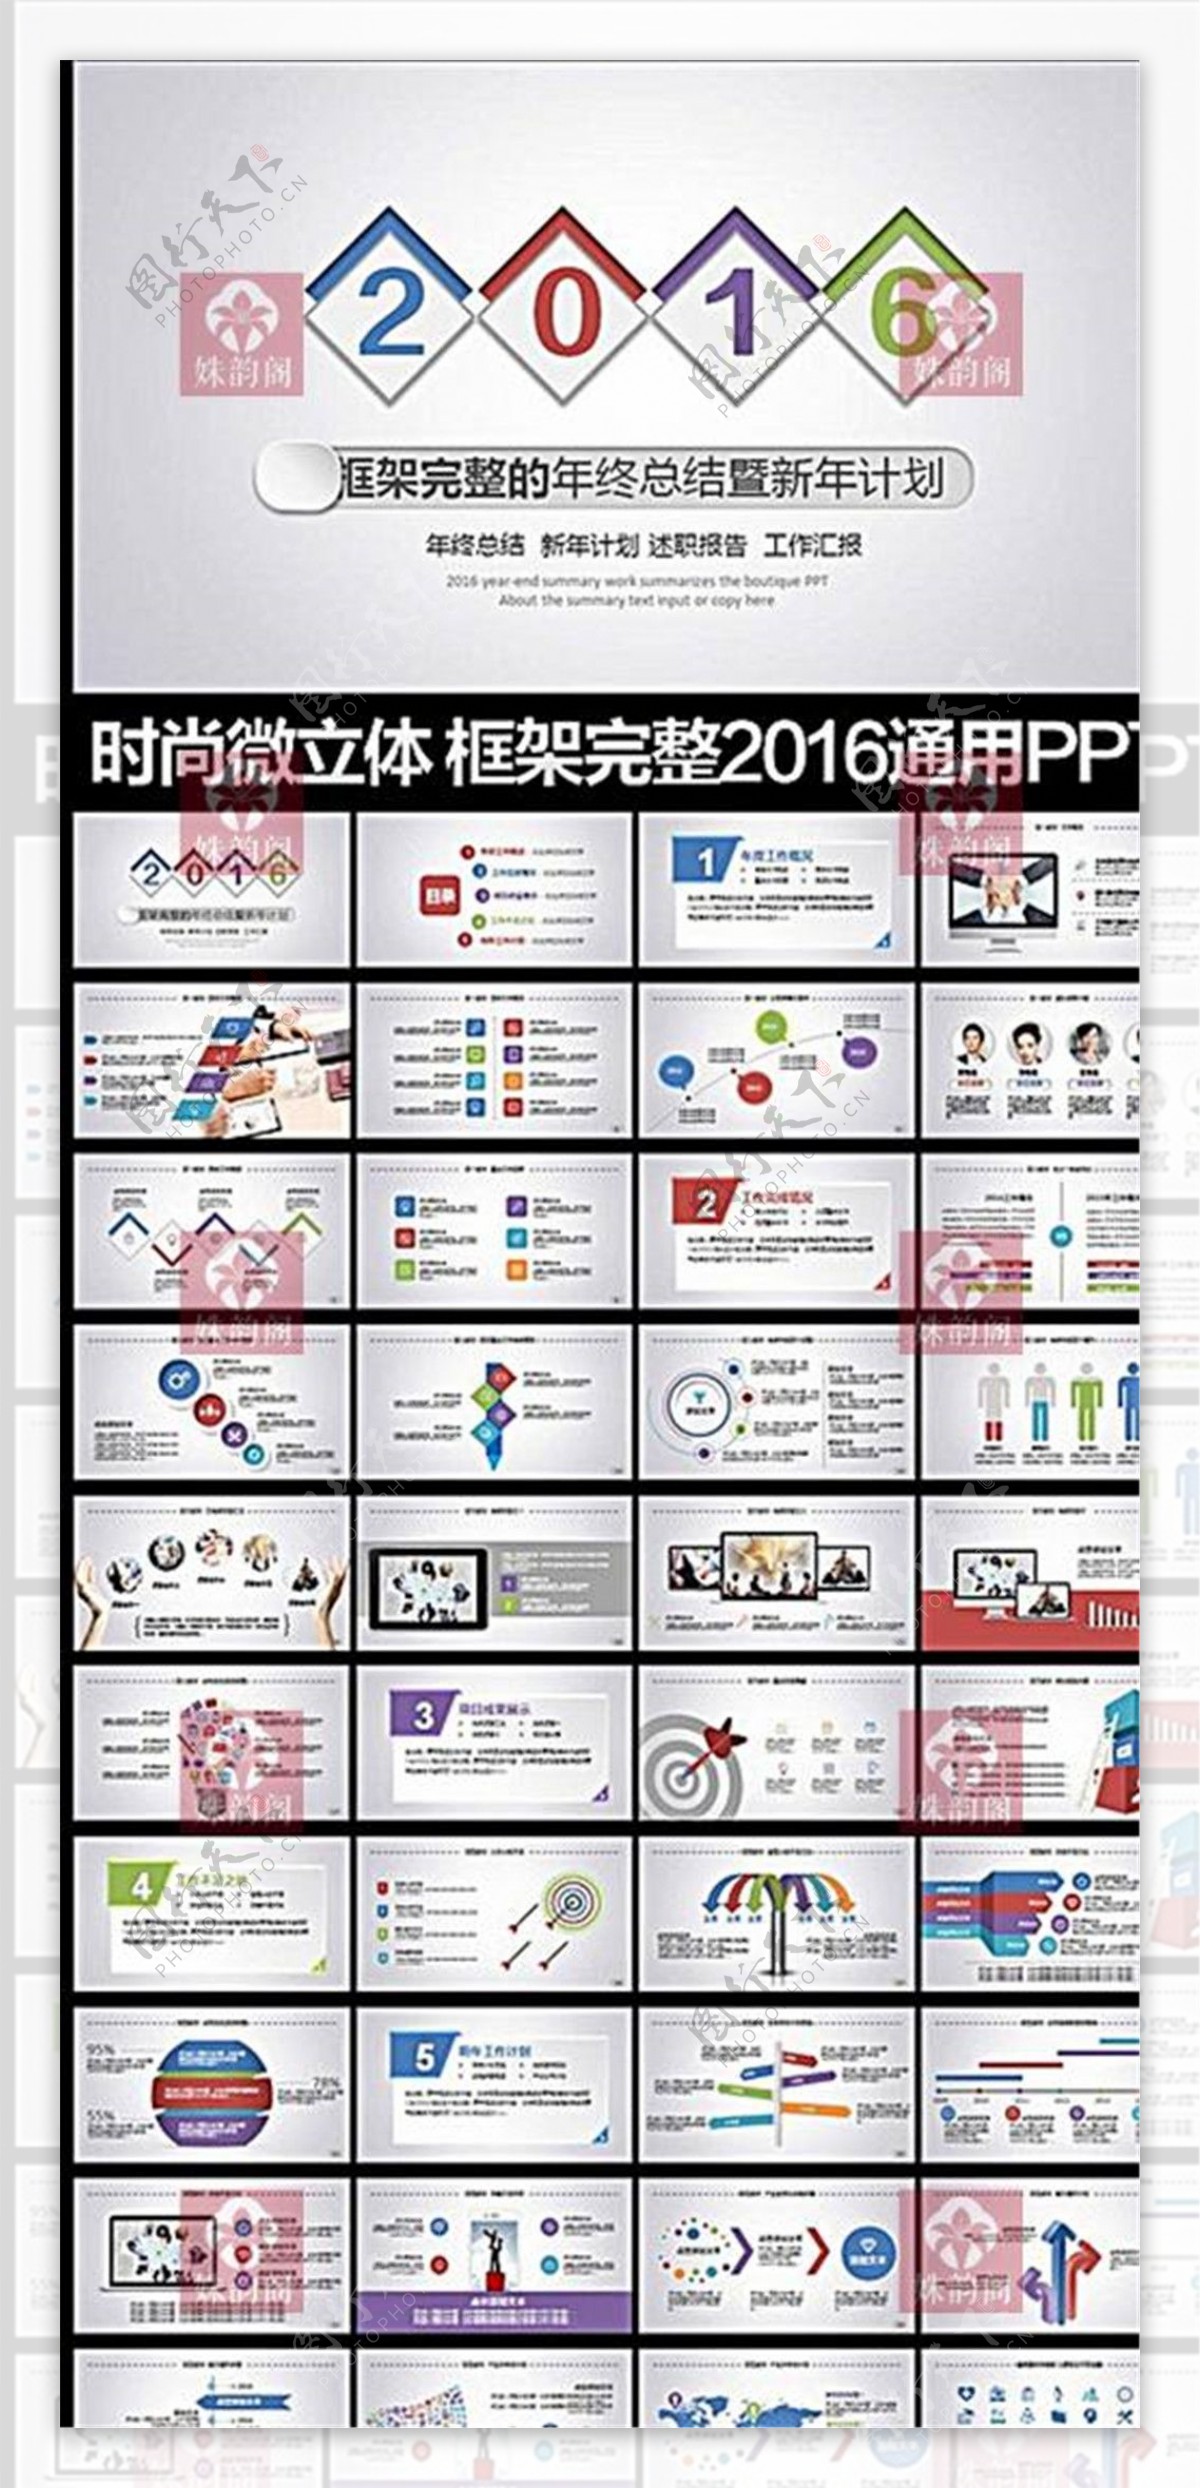 2016框架完整的年终总结PPT模板下载